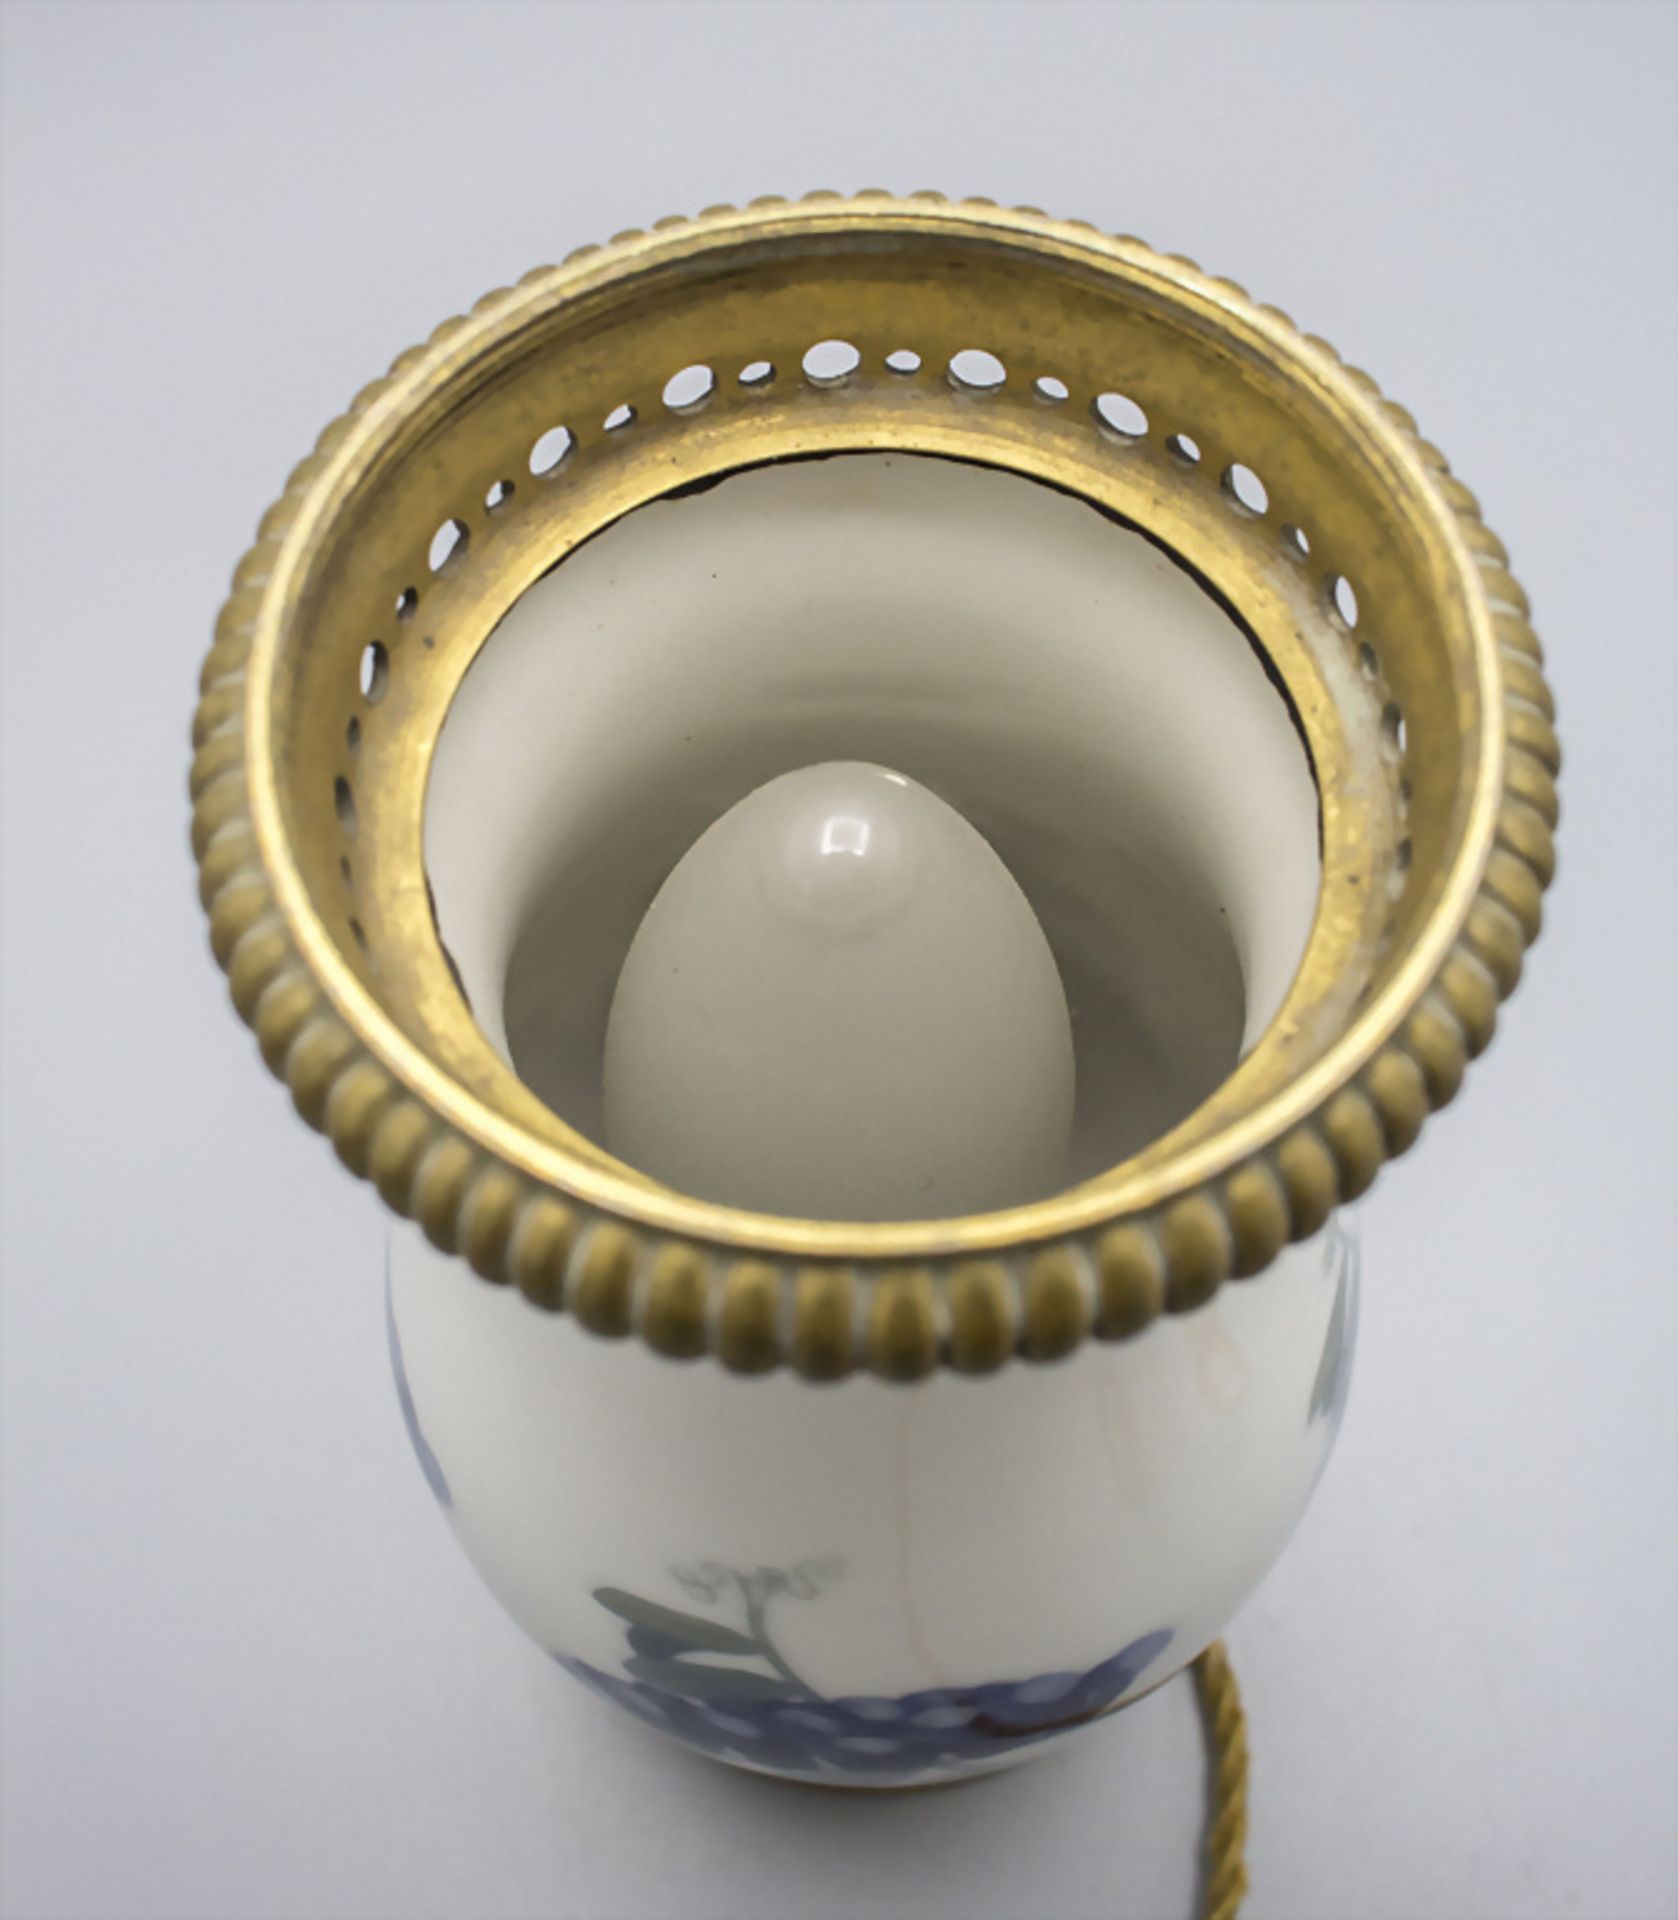 Jugendstil Lampe mit Blauregen / An Art Nouveau porcelain lamp with wisteria, Royal ... - Image 2 of 5